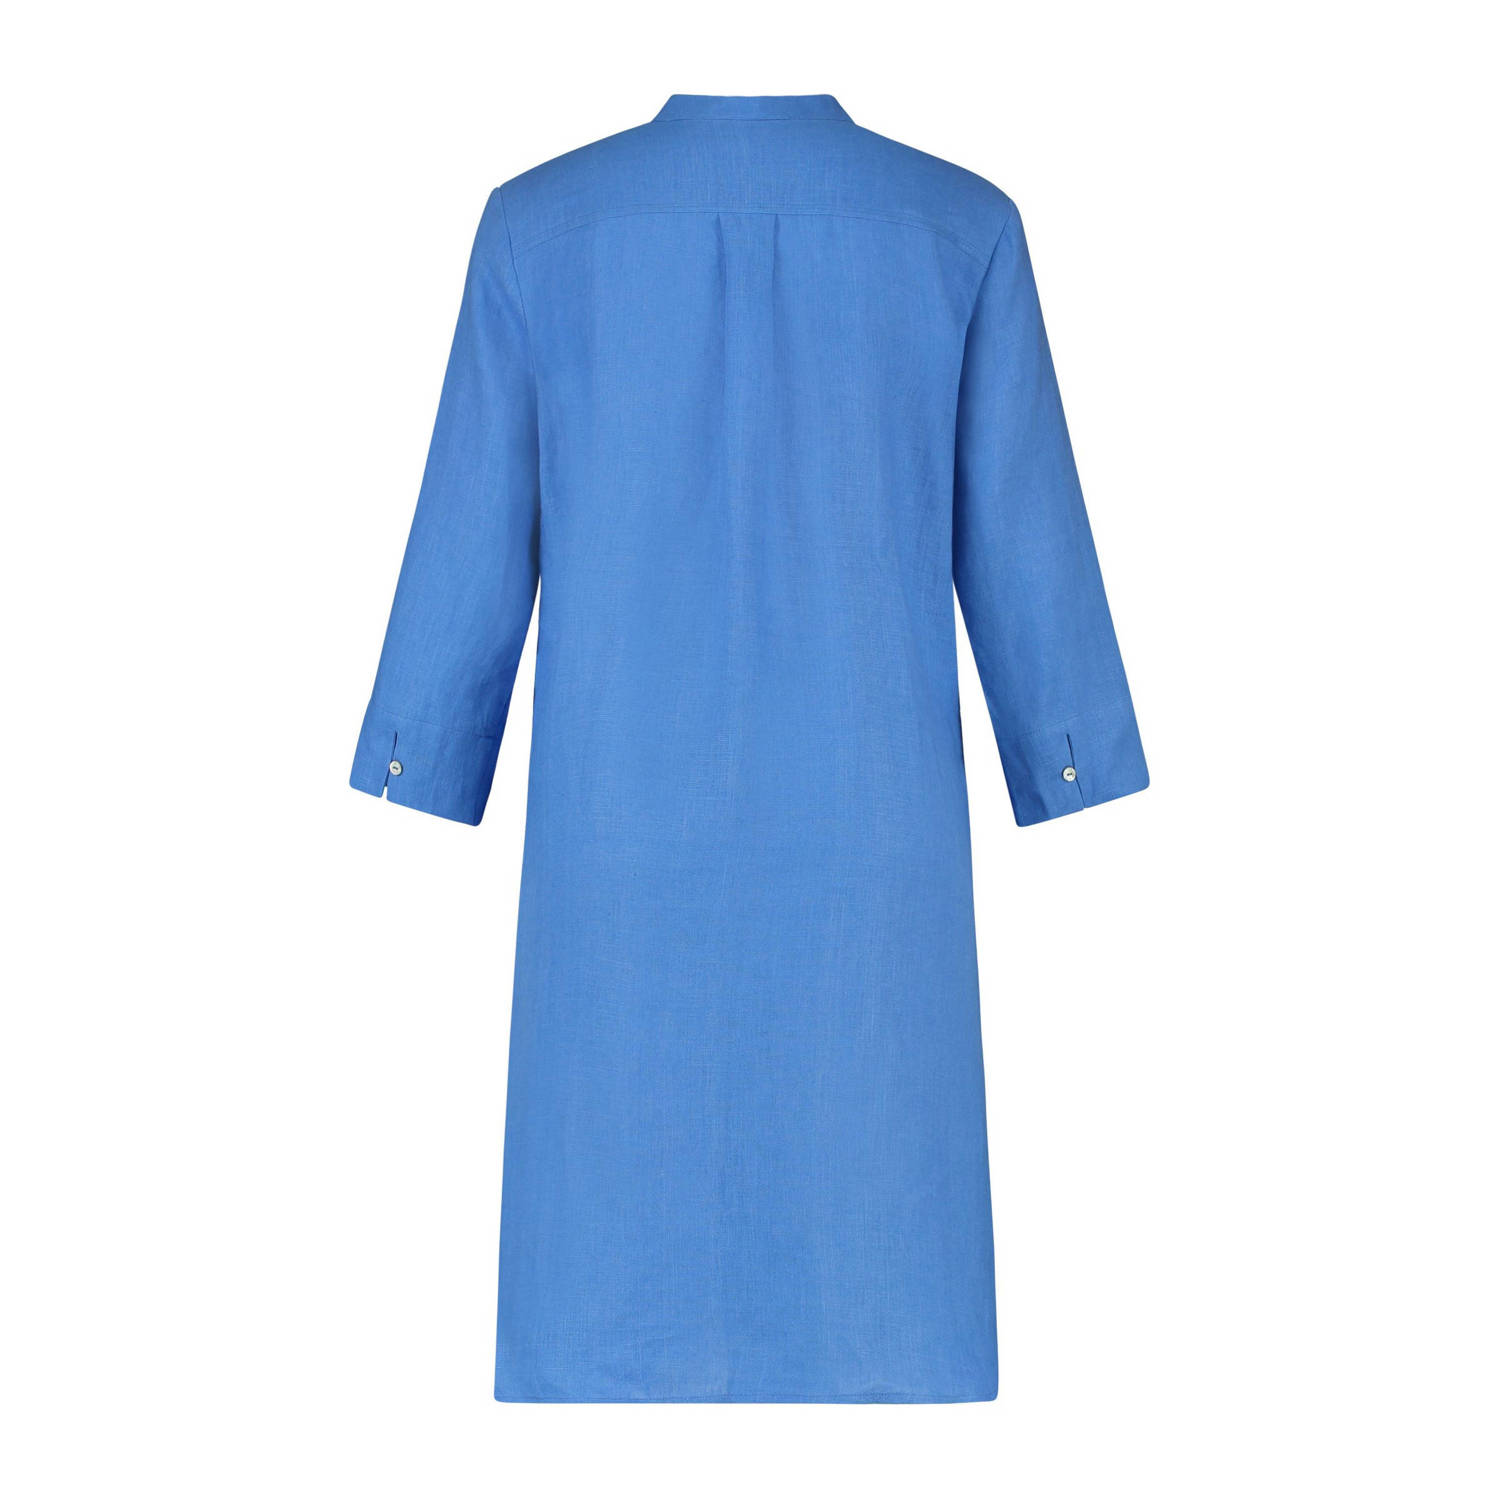 Expresso linnen jurk blauw